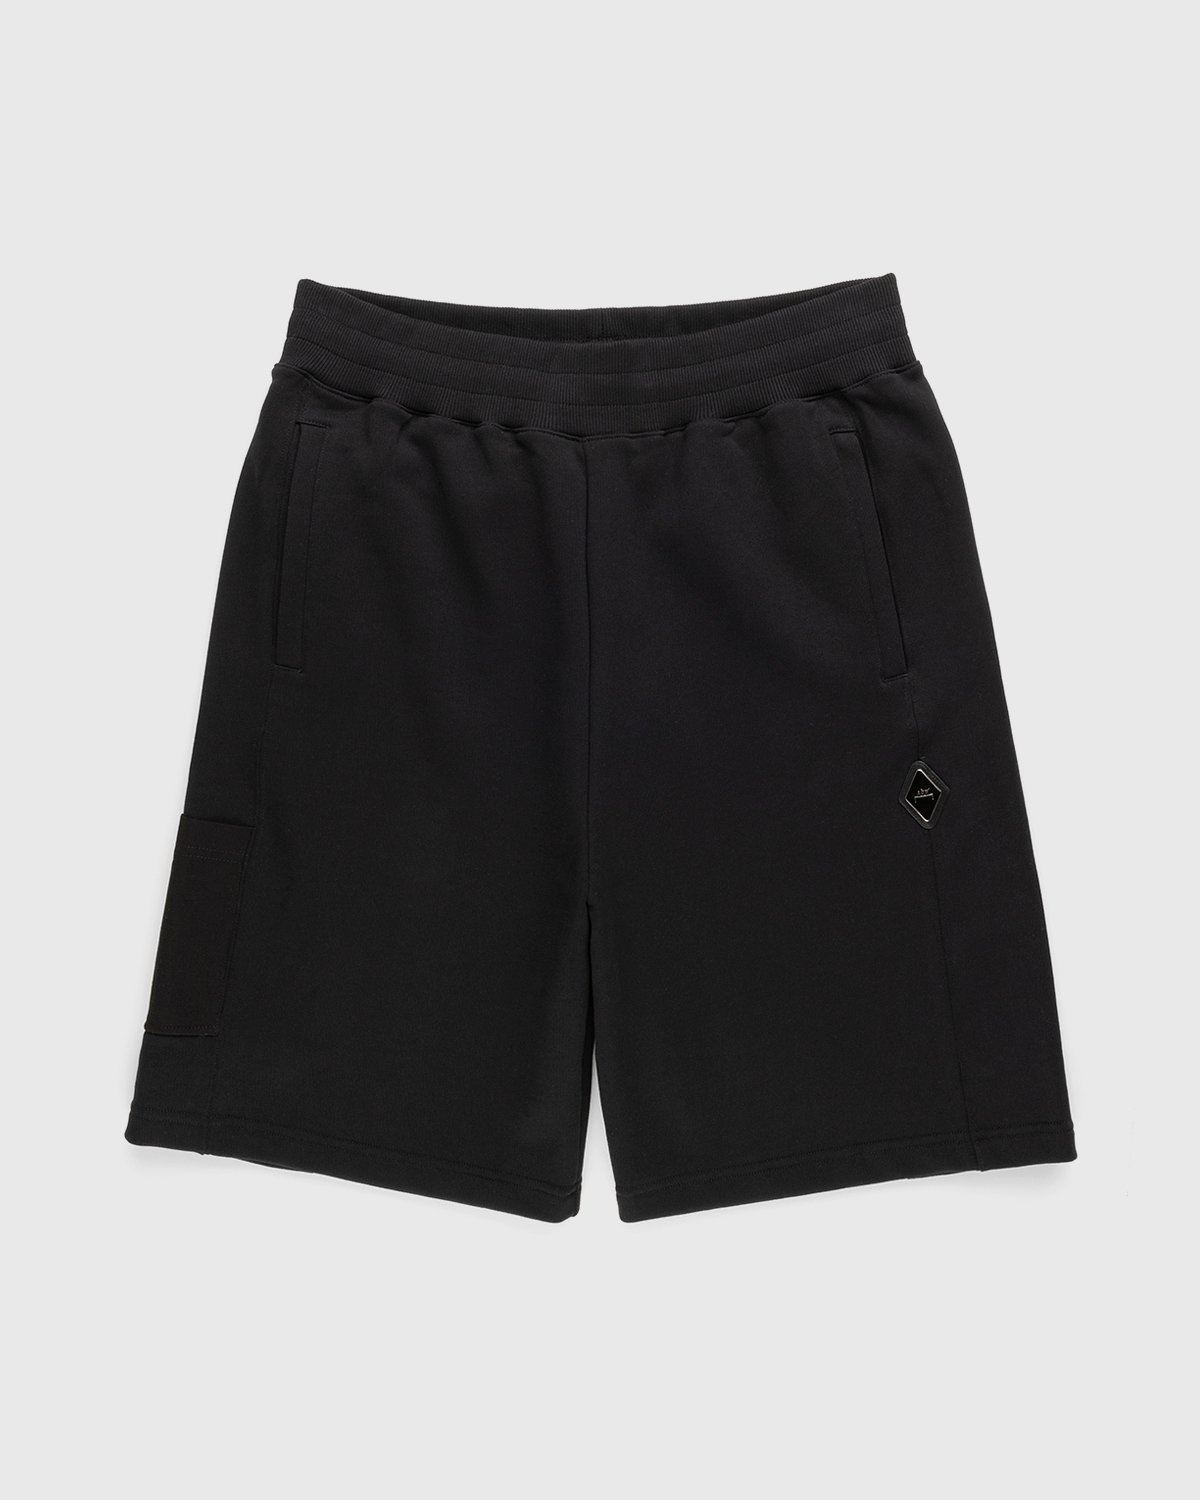 A-Cold-Wall* – Vault Shorts Black - Shorts - Black - Image 1